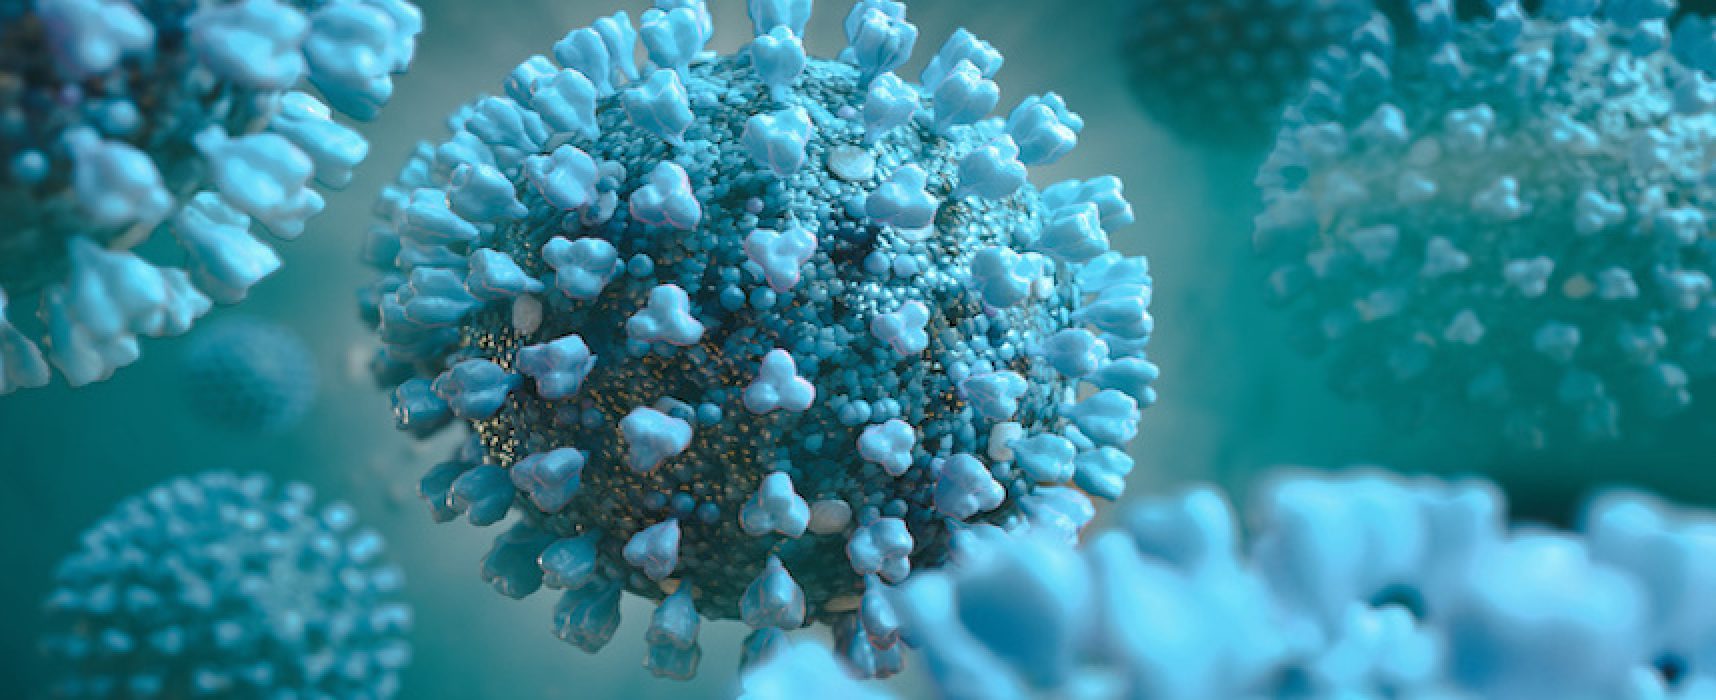 Coronavirus, in Puglia isolati due distinti ceppi virali per sequenziamento genoma